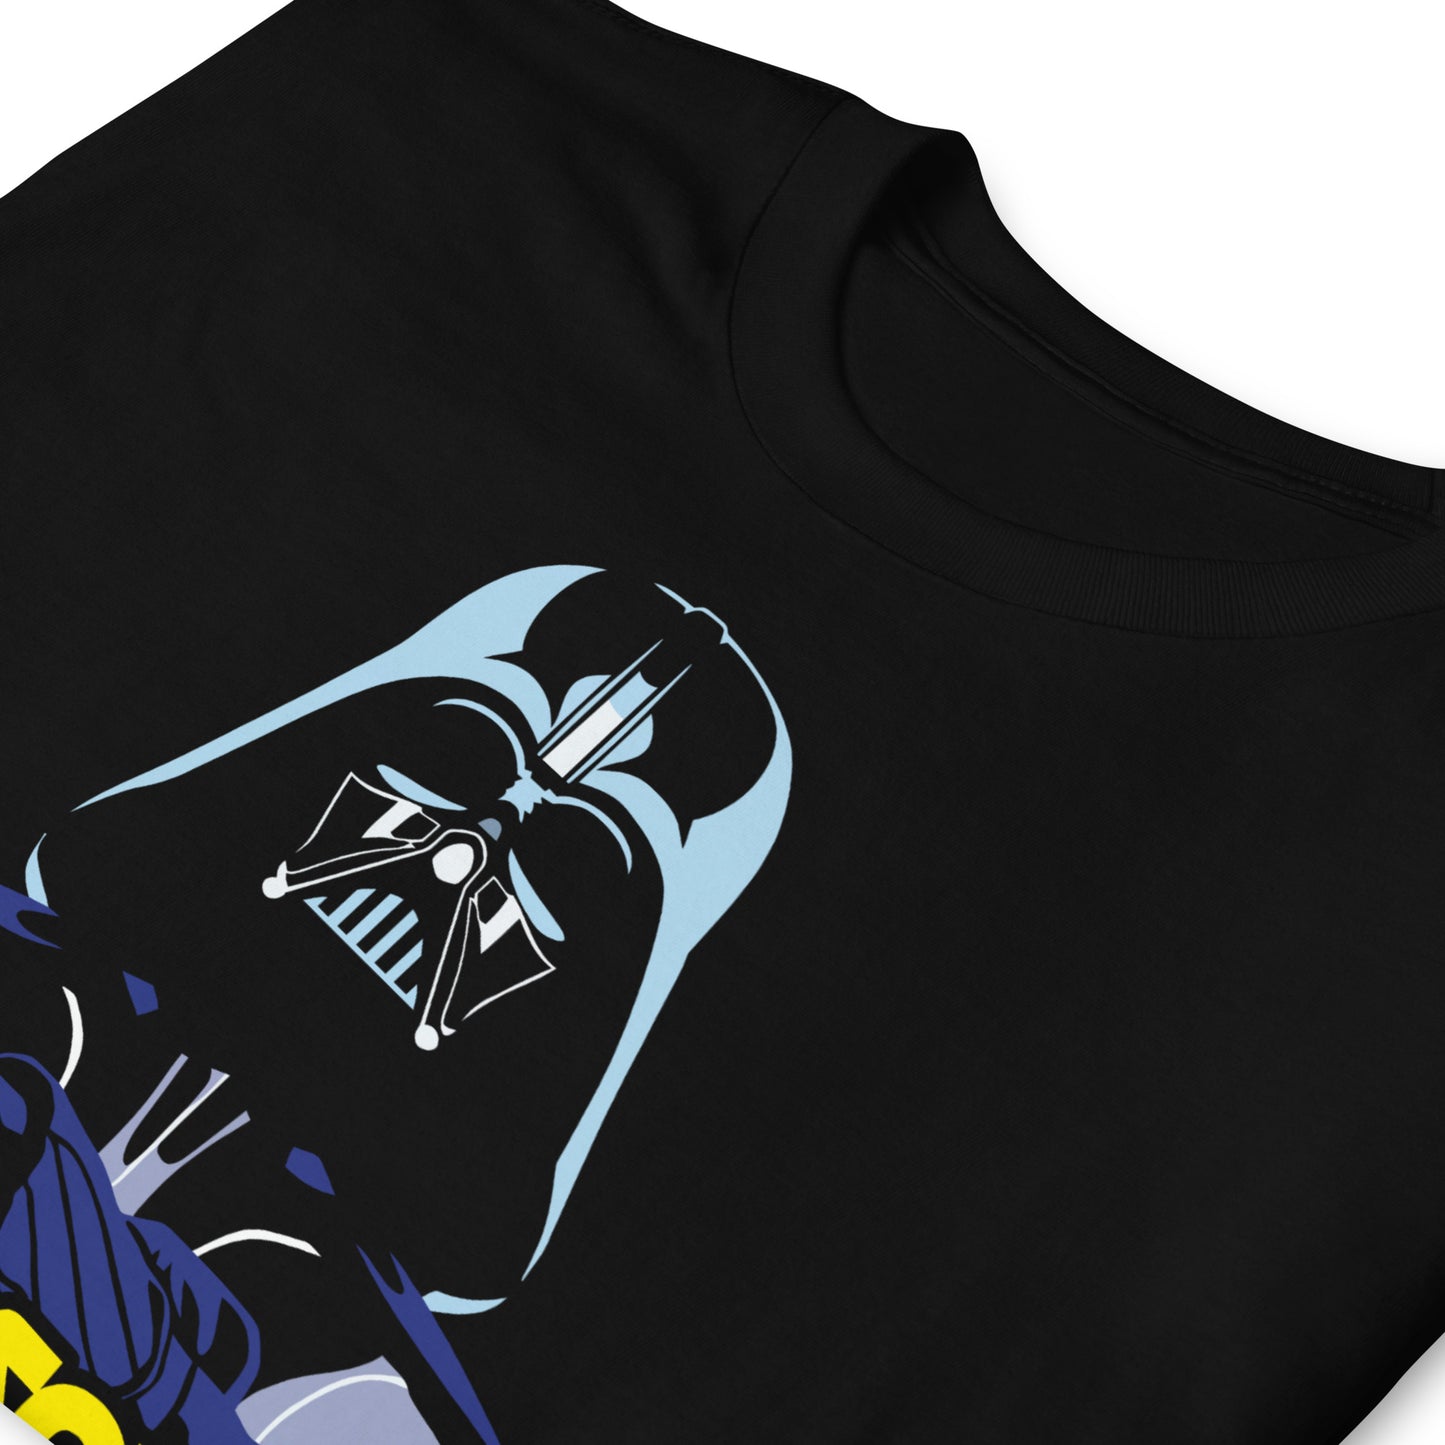 Camiseta Yo Soy Tu Padre con Darth Vader de Star Wars. Color negro.